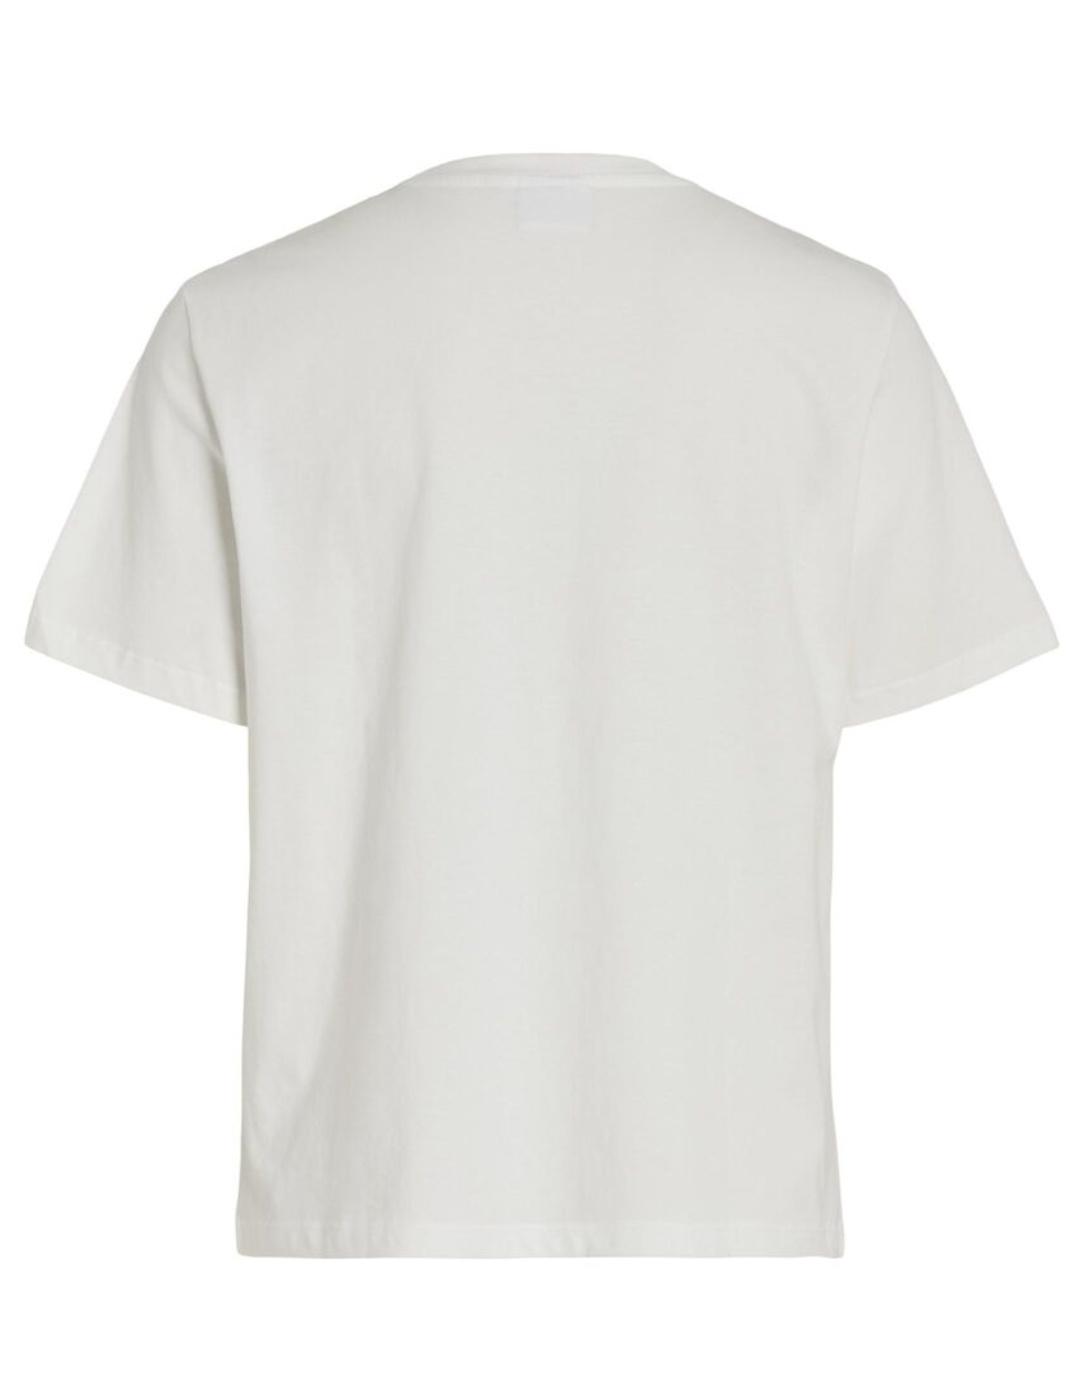 Camisetas Vila Sybil blanco holgada manga corta para mujer